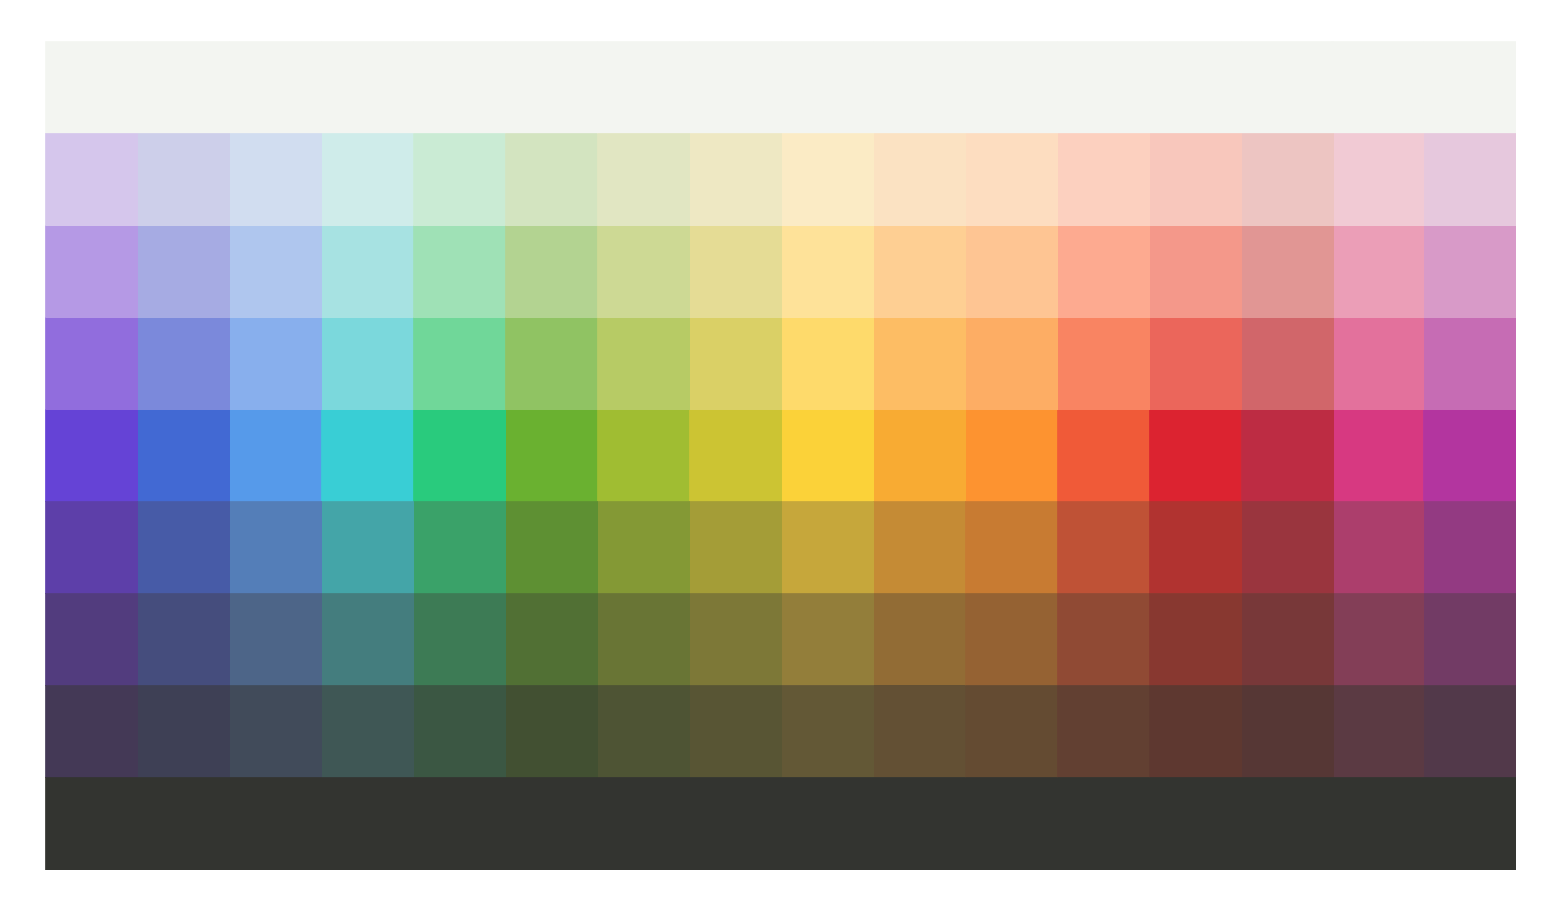 maetl.net chromatic palette v2 index